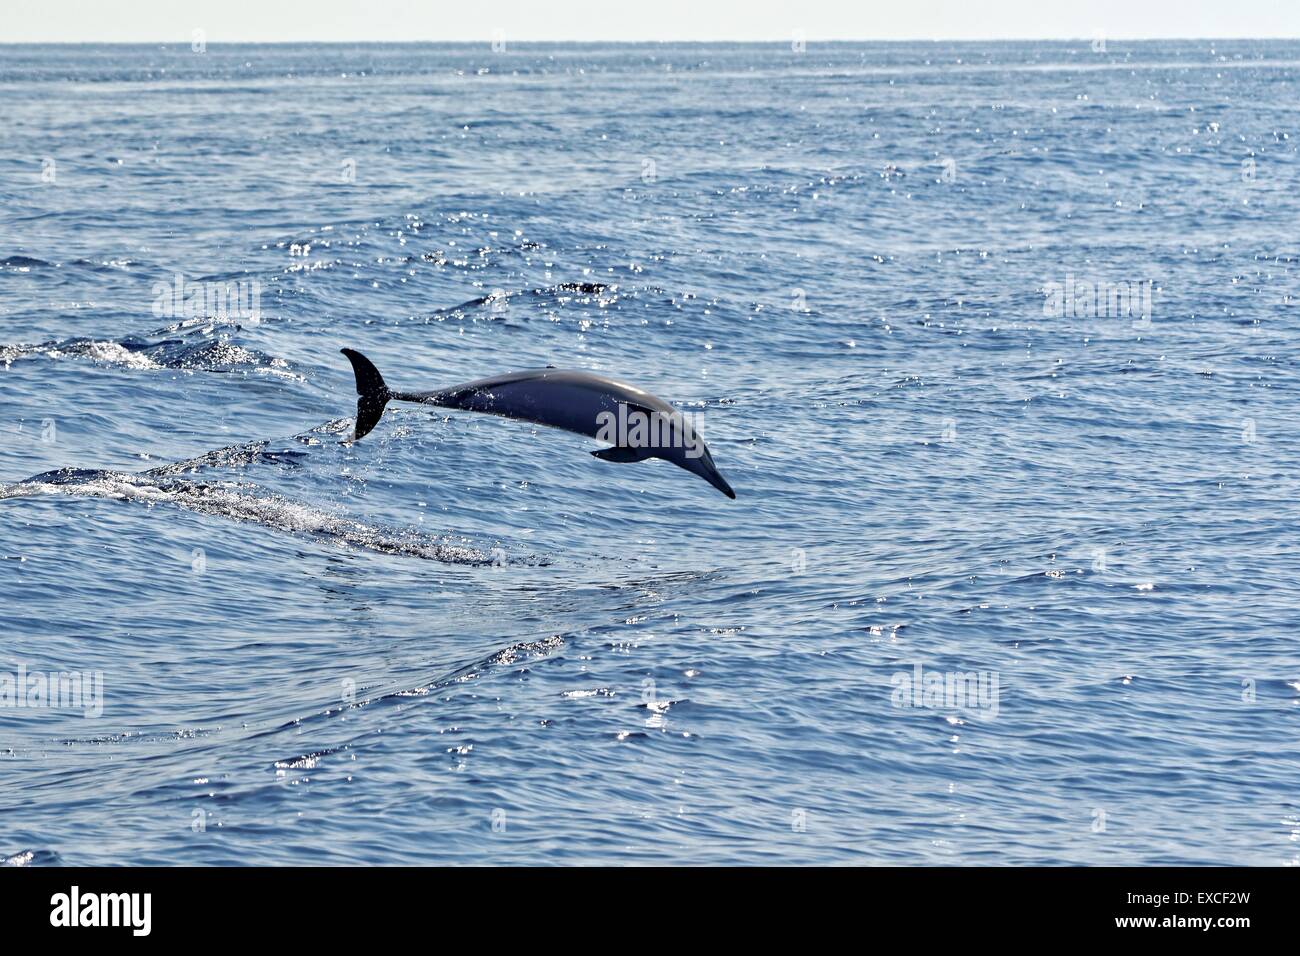 Common dolphins (Delphinus delphis) swimming in the Gulf of Genoa, Ligurian Sea. Stock Photo